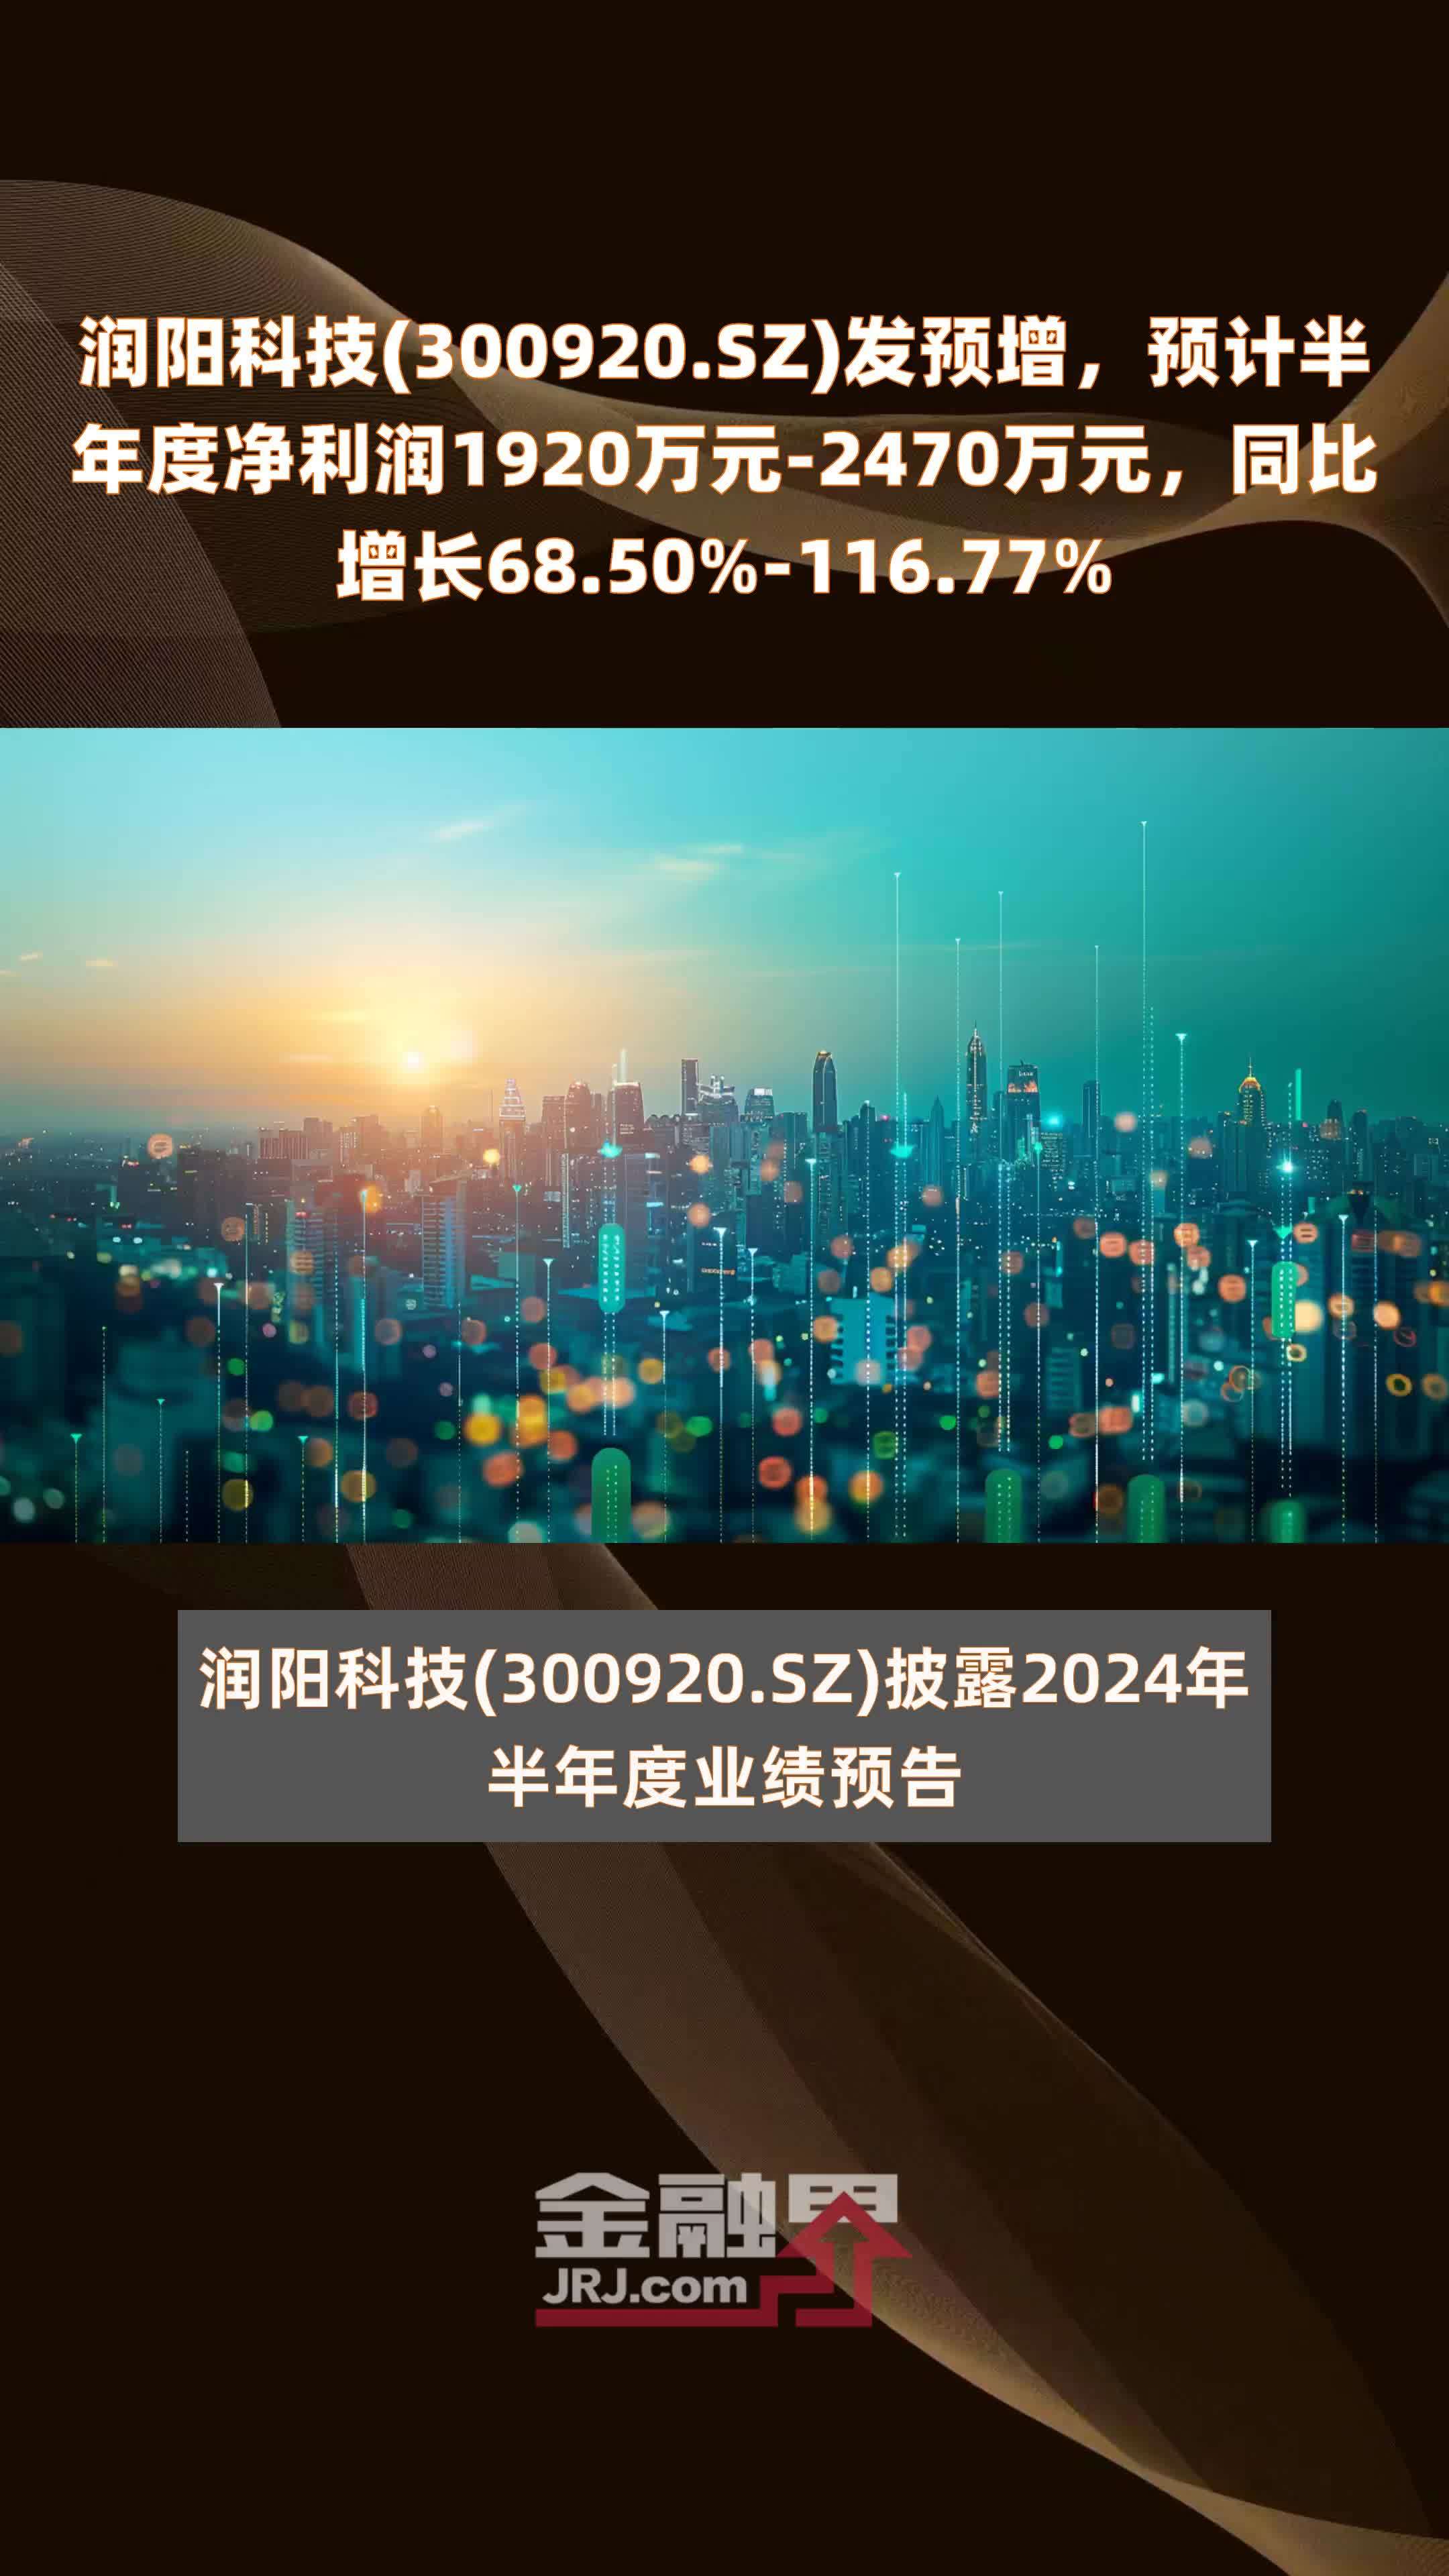 润阳科技300920sz发预增预计半年度净利润1920万元2470万元同比增长